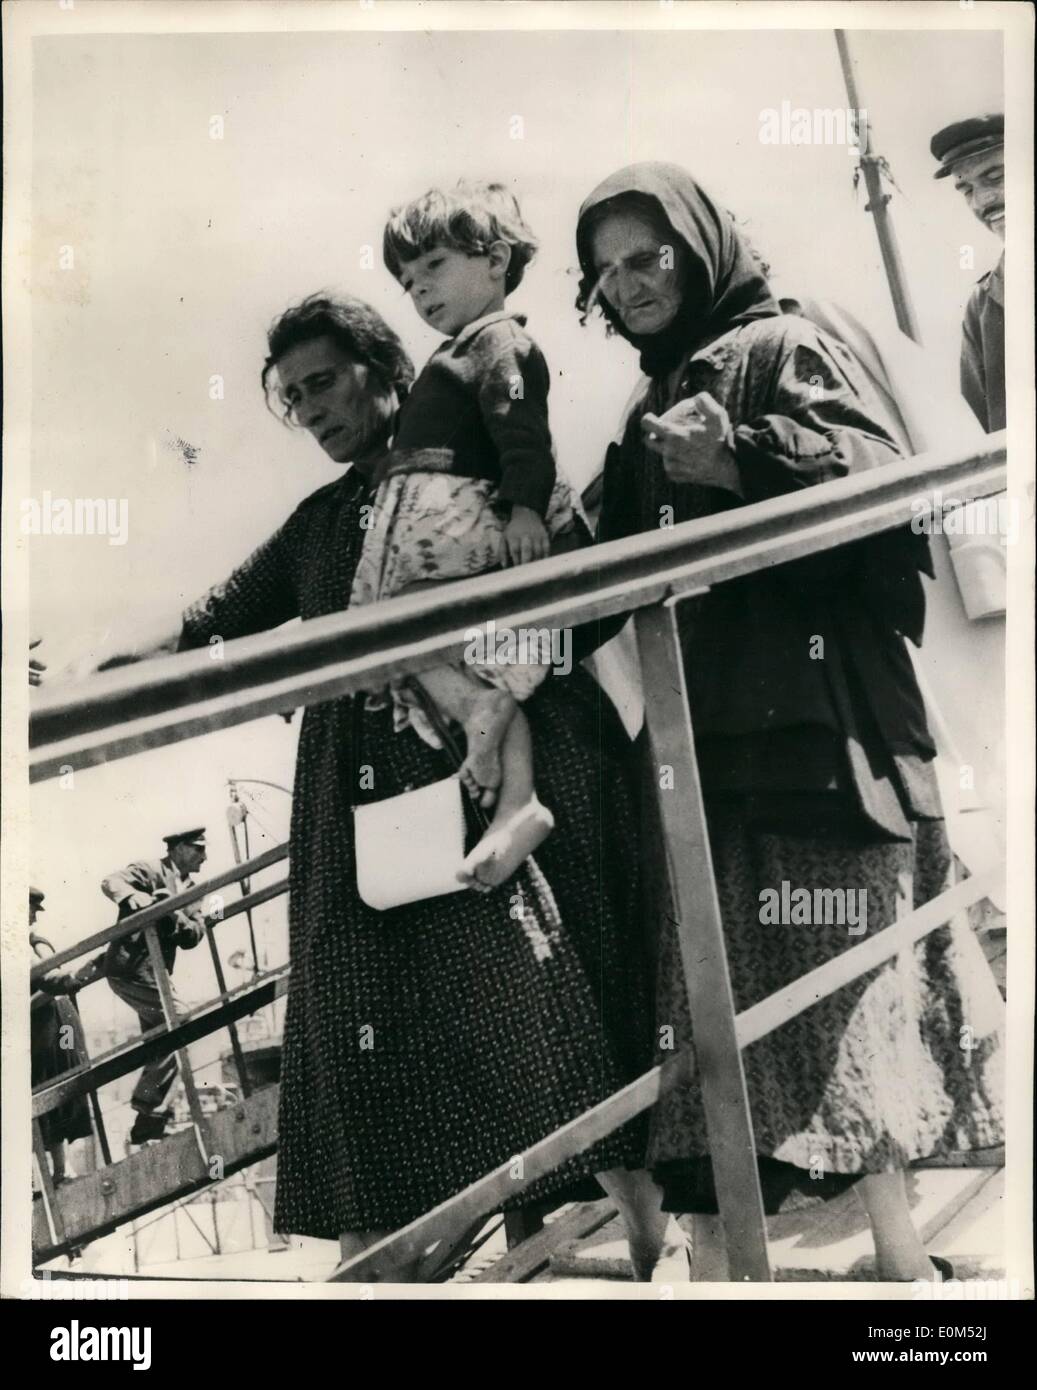 Agosto 08, 1953 - IL GRECO TERREMOTO tutta la città scivolare in mare.; più tremori scosso le isole greche nel Mar Ionio oggi come British navi da guerra è arrivato per aiutare nelle operazioni di soccorso. Un 'Dunkirk'' evacuazione entrò in funzione ai sopravvissuti alla terraferma. La foto mostra i Greci le mamme che trasportano i loro figli a bordo dell esercito speciale trasporta le navi che li evacuati dal Pireo da uno dei colpite le isole dello Ionio. Foto Stock